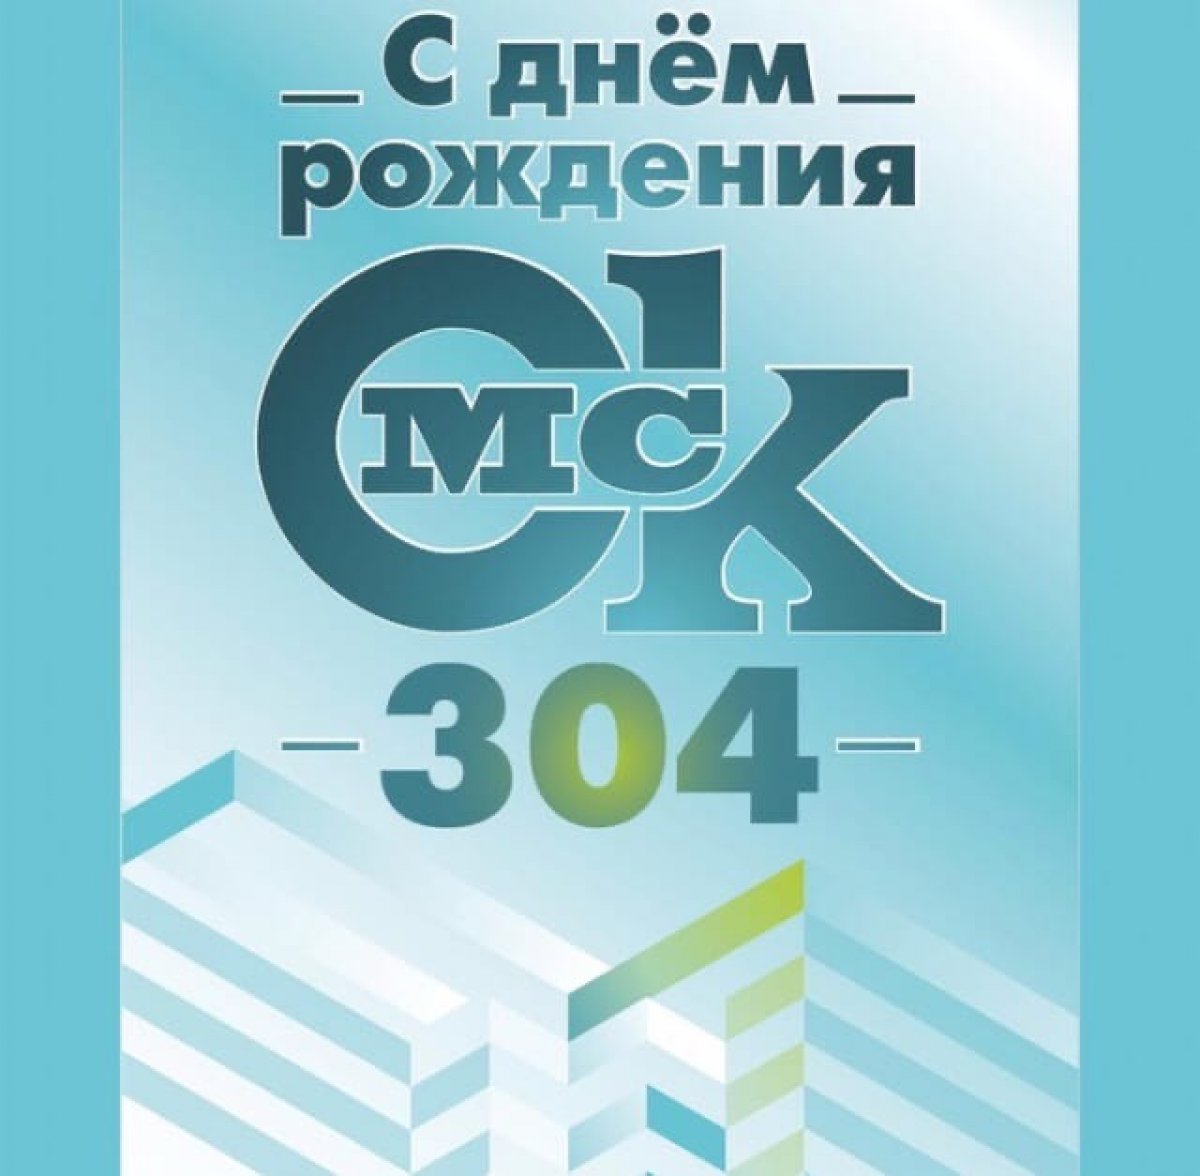 🎉Город Омск- это город возможностей, город ярких людей, город, в котором мы живём!